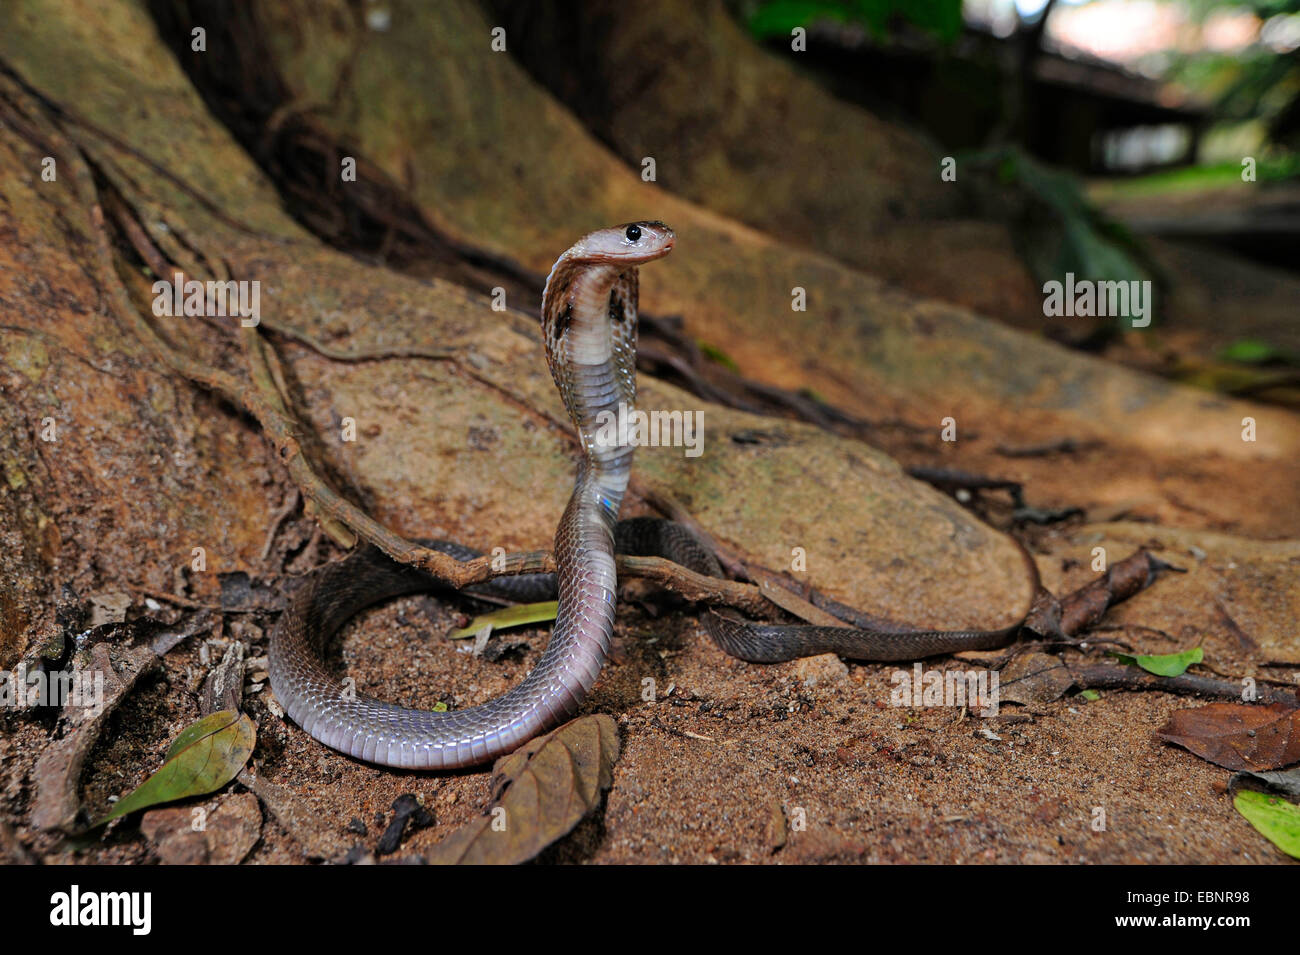 common cobra, Indian cobra (Naja naja), in defence posture, Sri Lanka Stock Photo